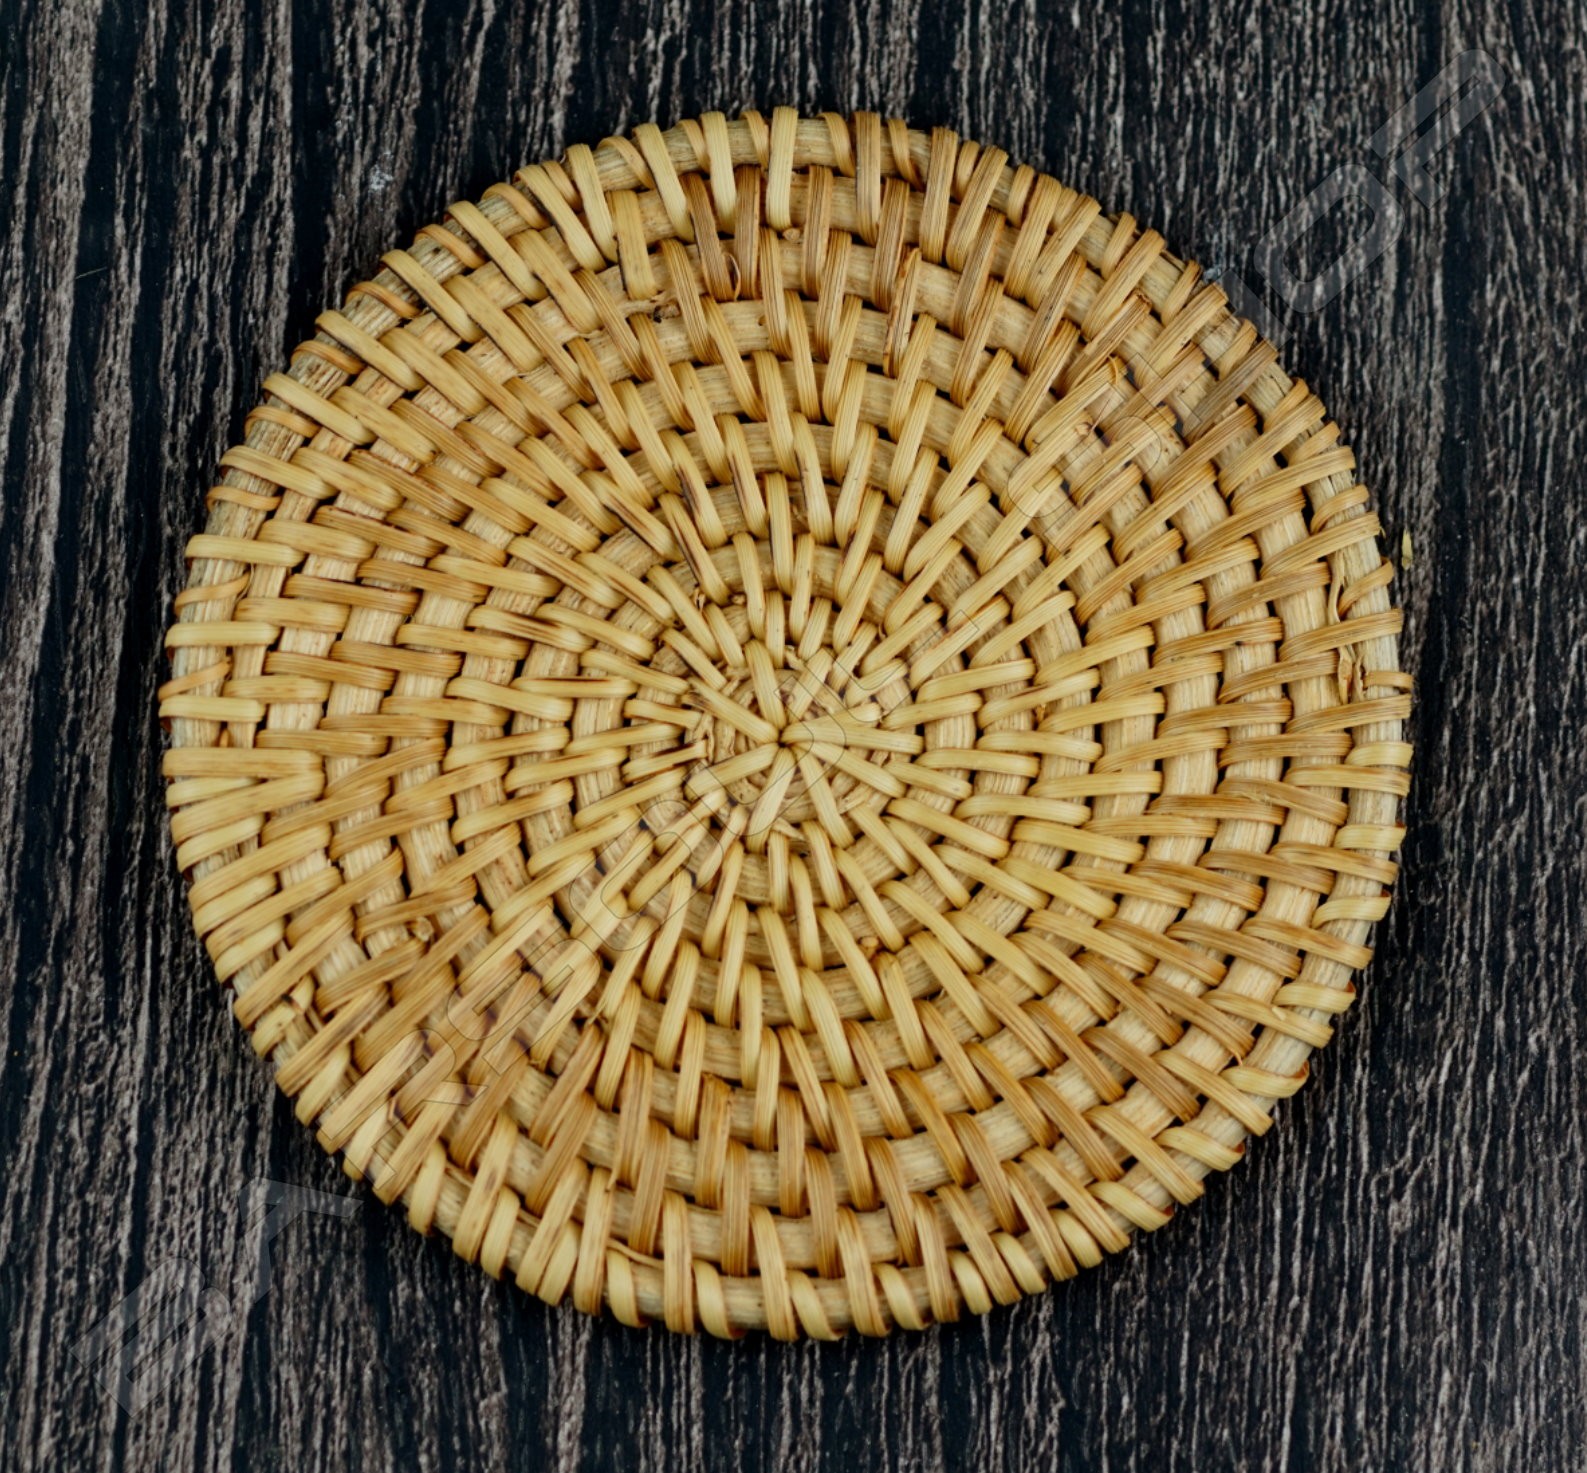 圓形竹杯墊(B) Round bamboo coaster